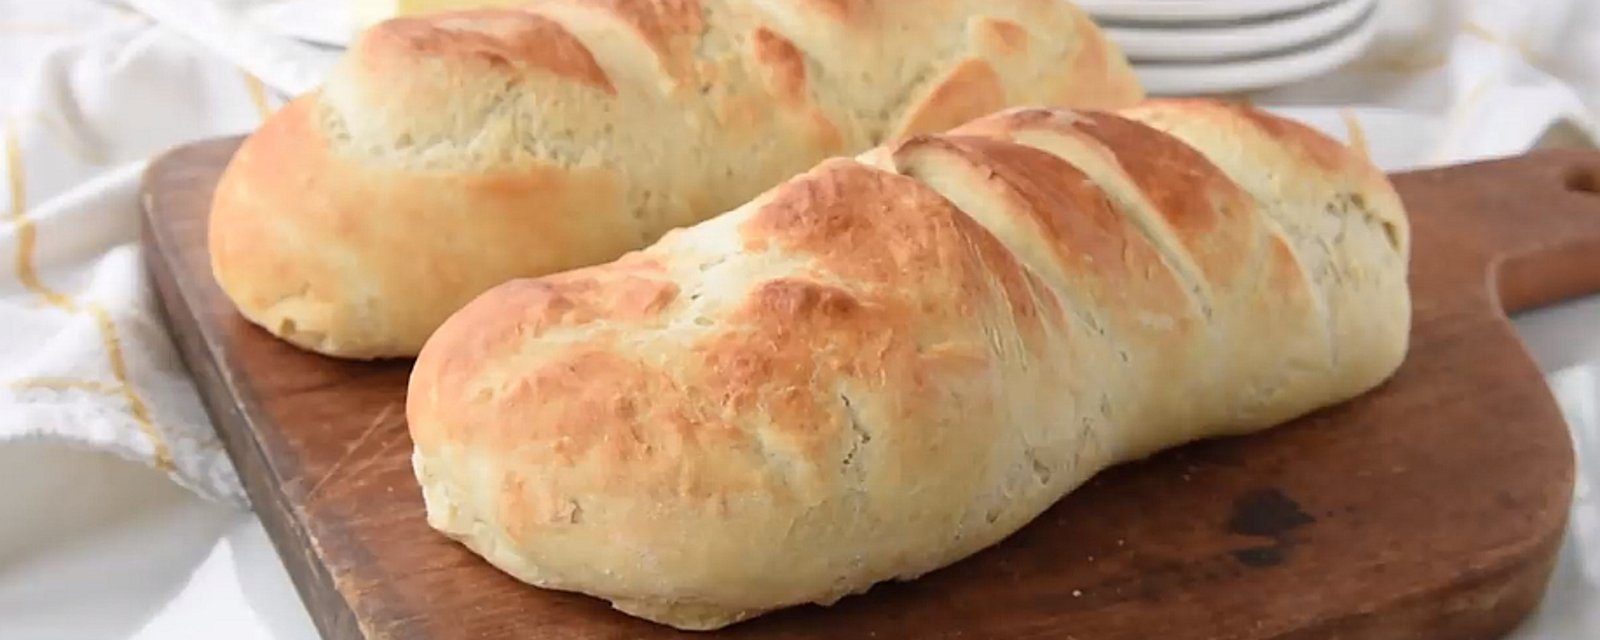 Confectionnez un pain français à la maison super facilement